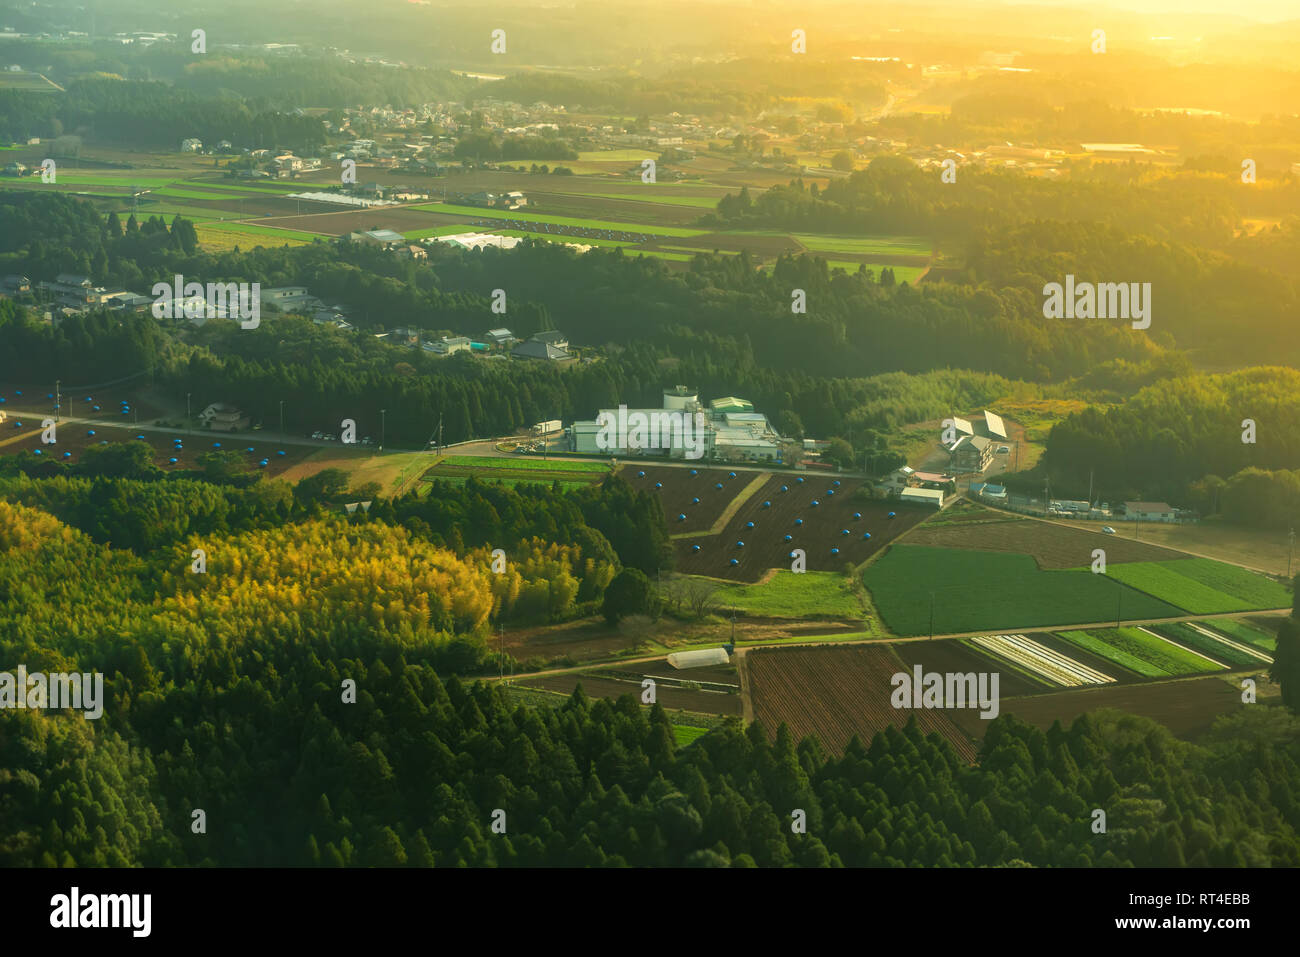 Bellissima alba vista aerea del paesaggio rurale con campi verdi, case e strada in Asia, Giappone Foto Stock